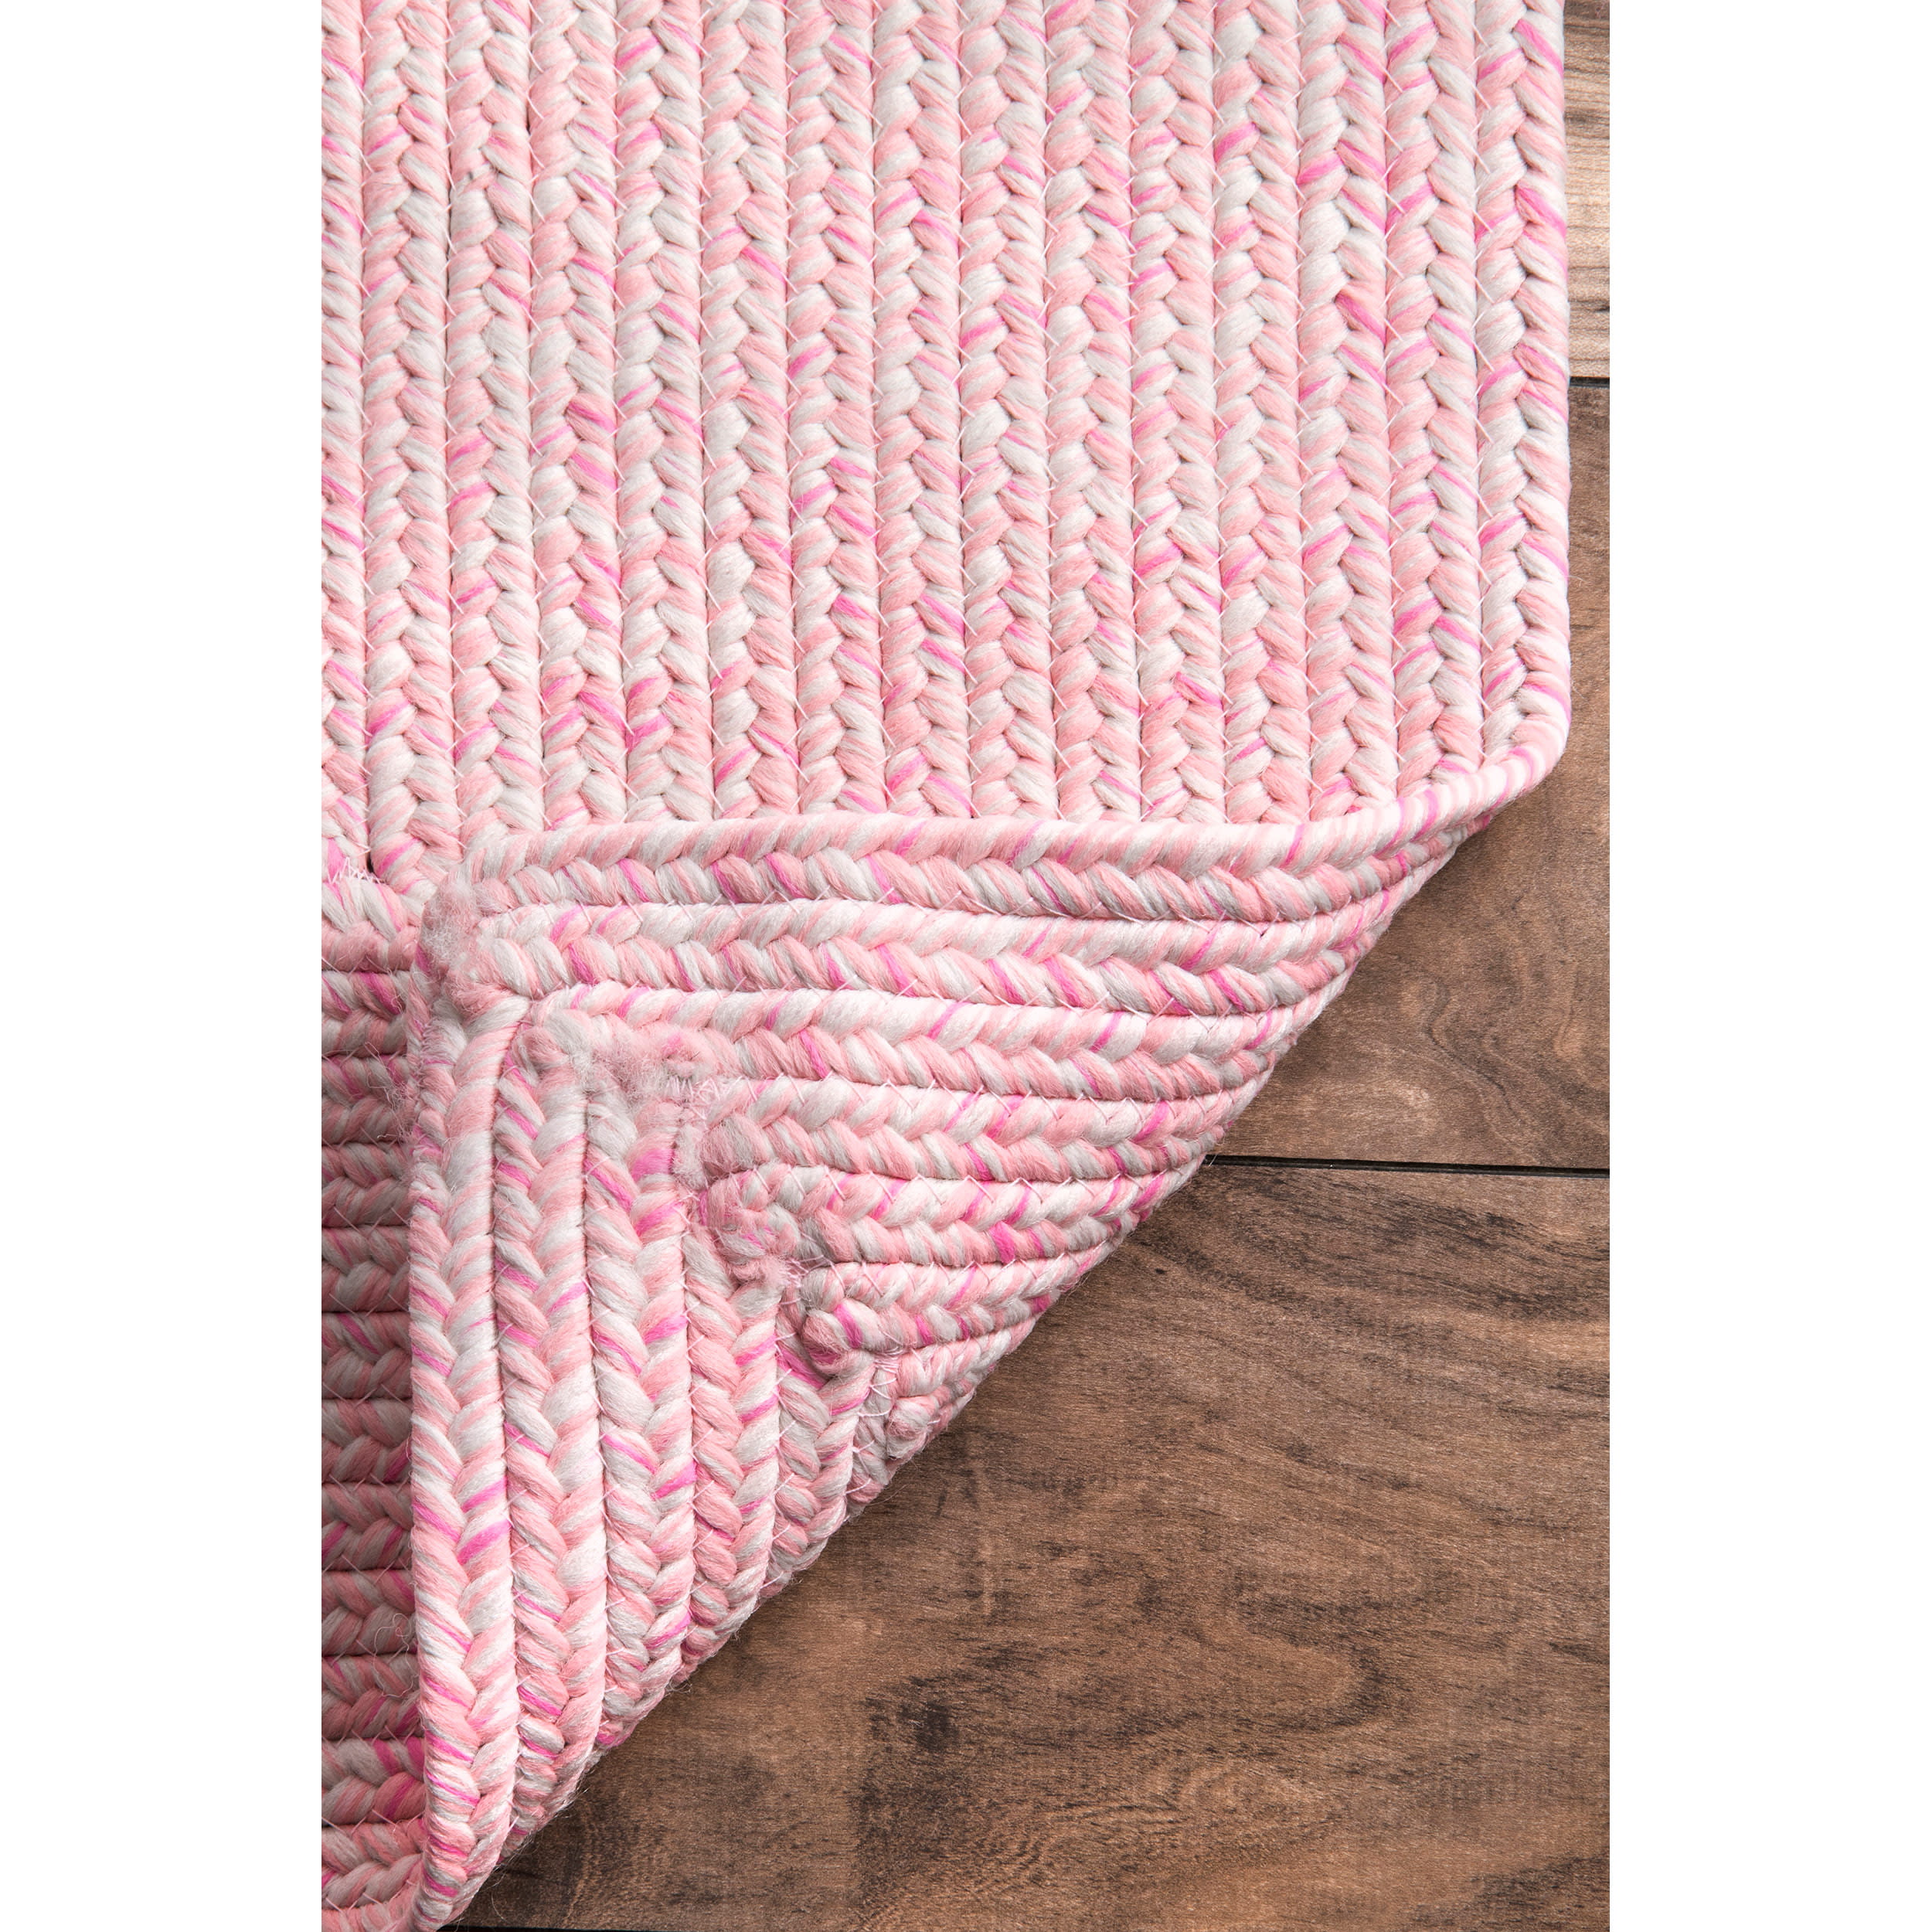 Pink nuLOOM Wynn Braided Indoor/Outdoor Accent Rug 2' x 3' 